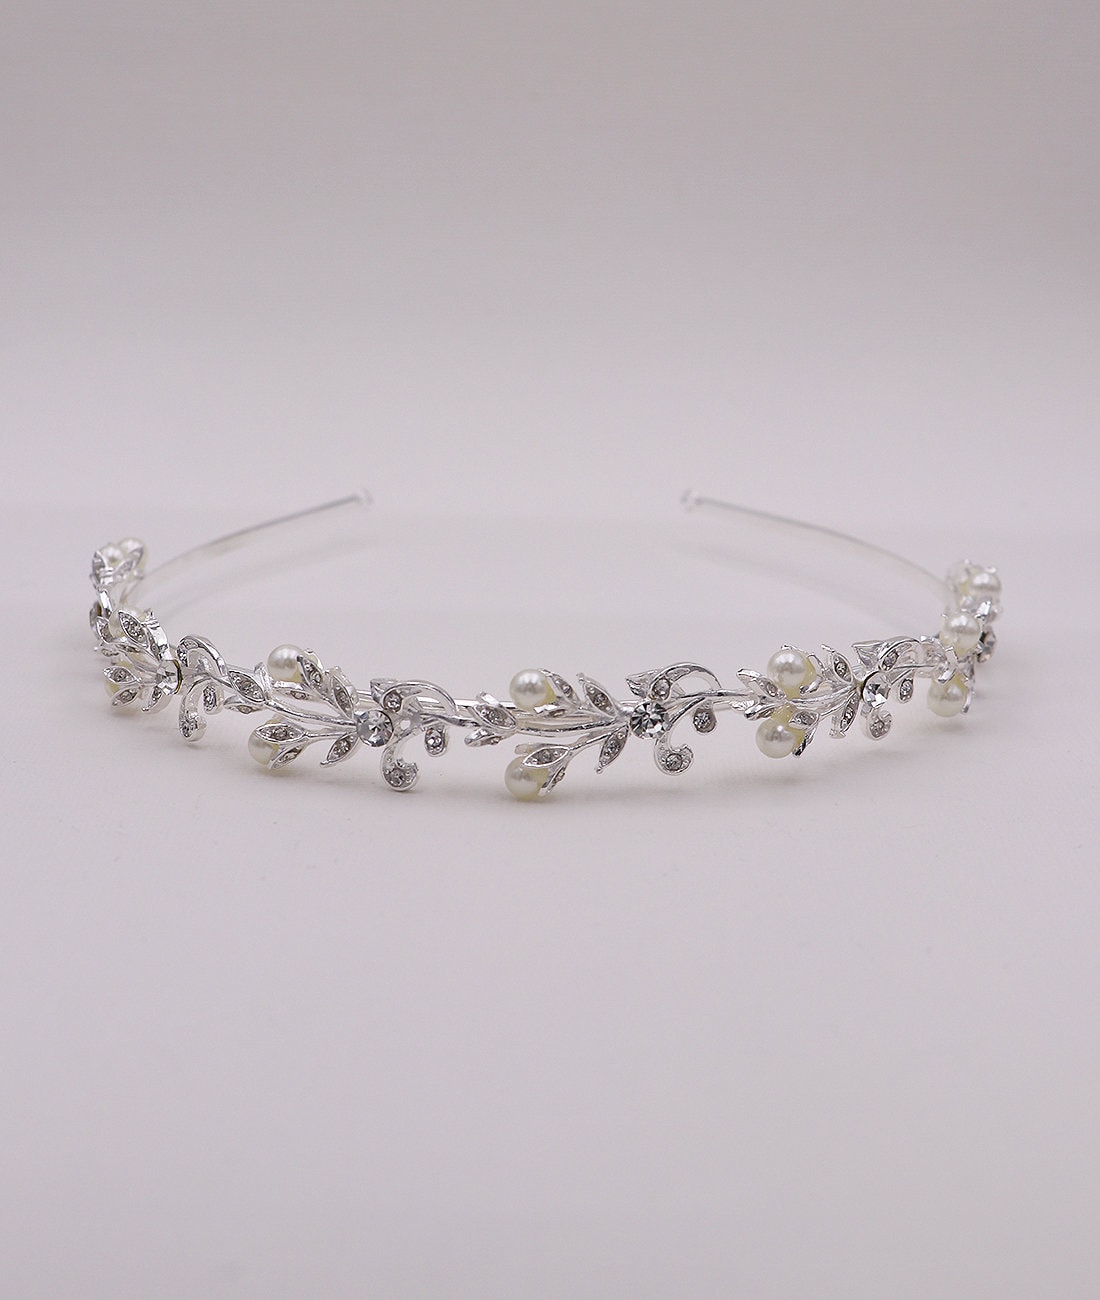 Shareky 4 Sets Beaded Bracelet Set Crystals Stretch Bracelet Swarovski Sparkling Bracelet for Girls